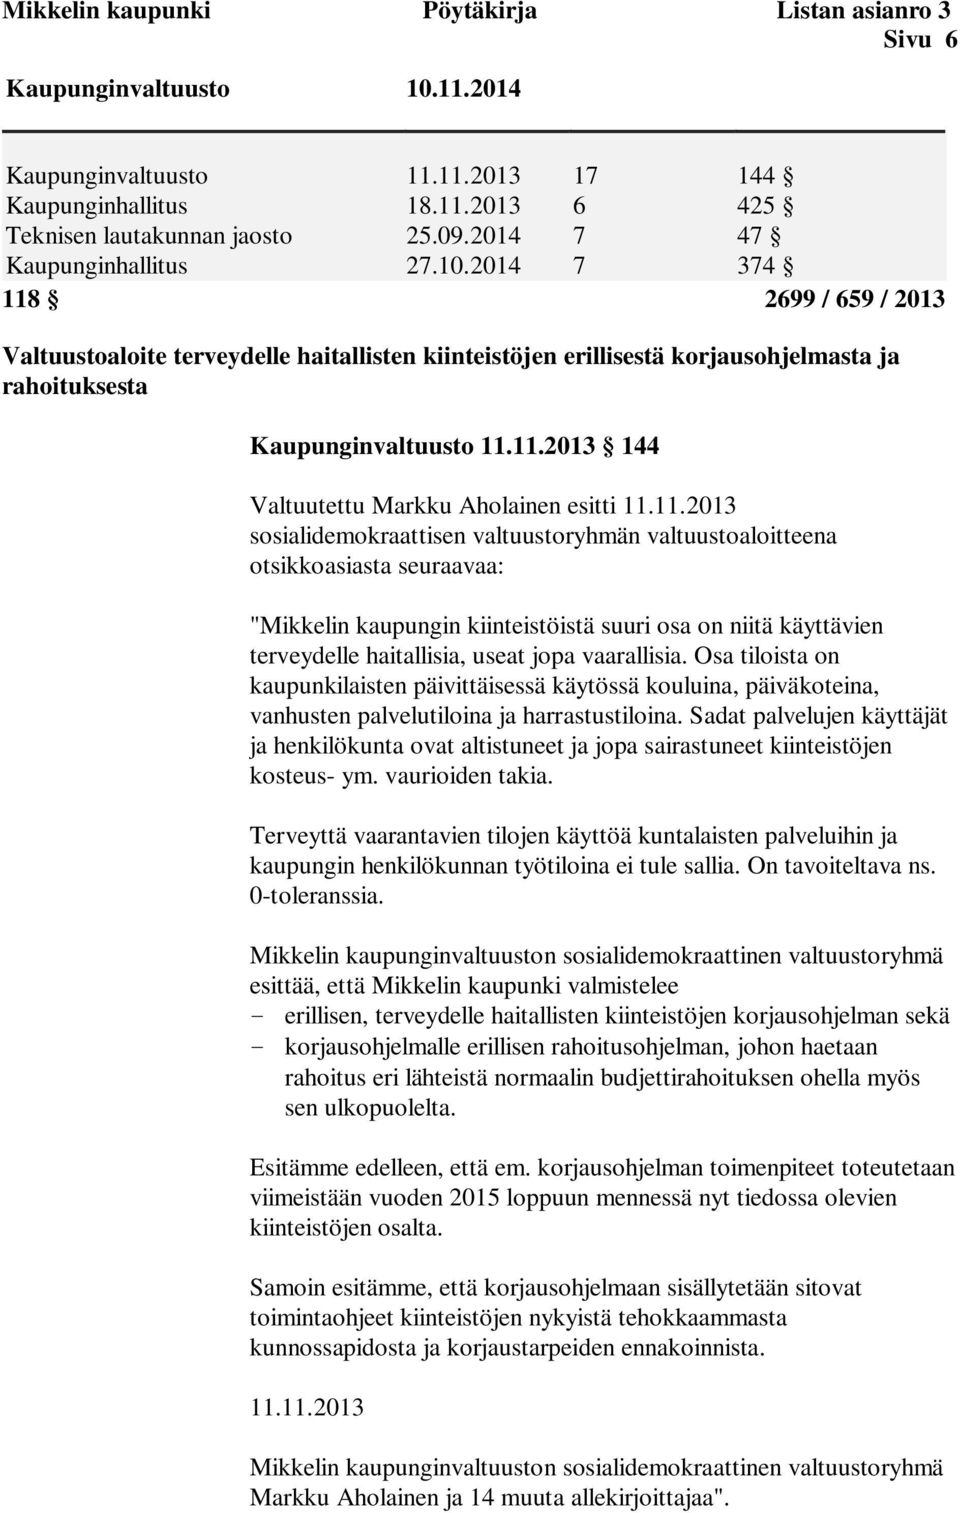 11.2013 sosialidemokraattisen valtuustoryhmän valtuustoaloitteena otsikkoasiasta seuraavaa: "Mikkelin kaupungin kiinteistöistä suuri osa on niitä käyttävien terveydelle haitallisia, useat jopa